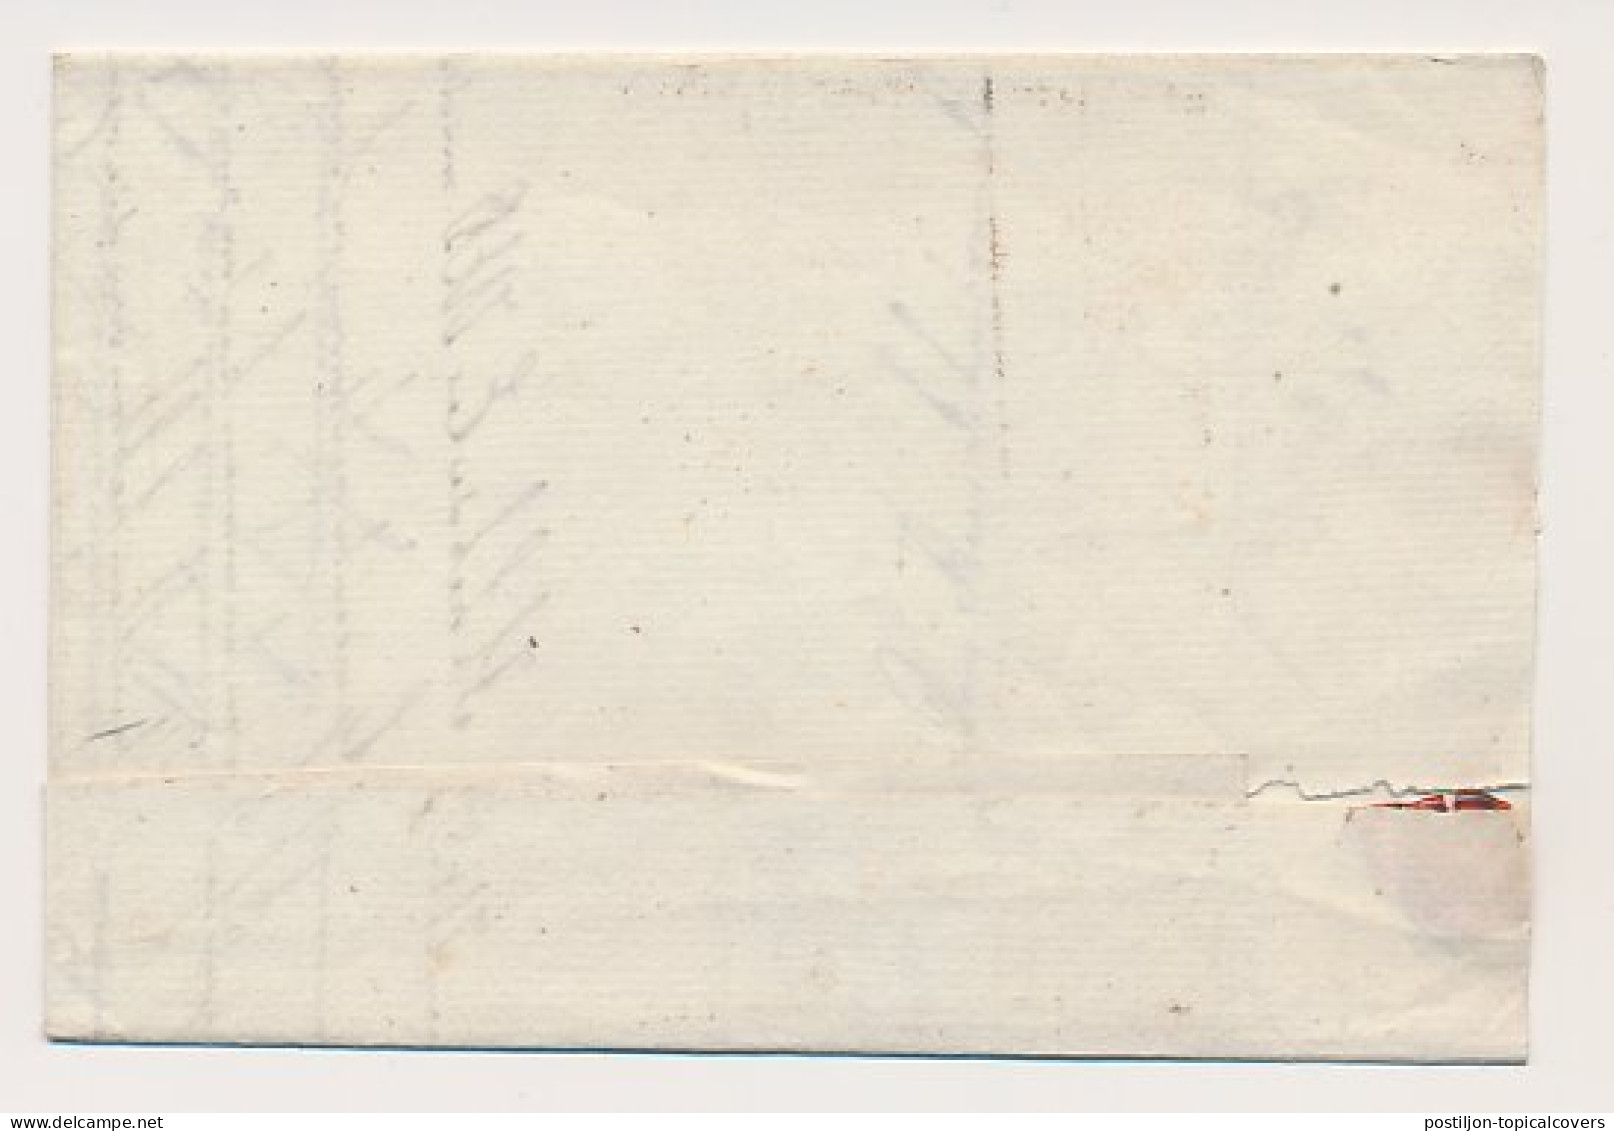 DOESBURG - Hummelo 1819 - ...-1852 Préphilatélie